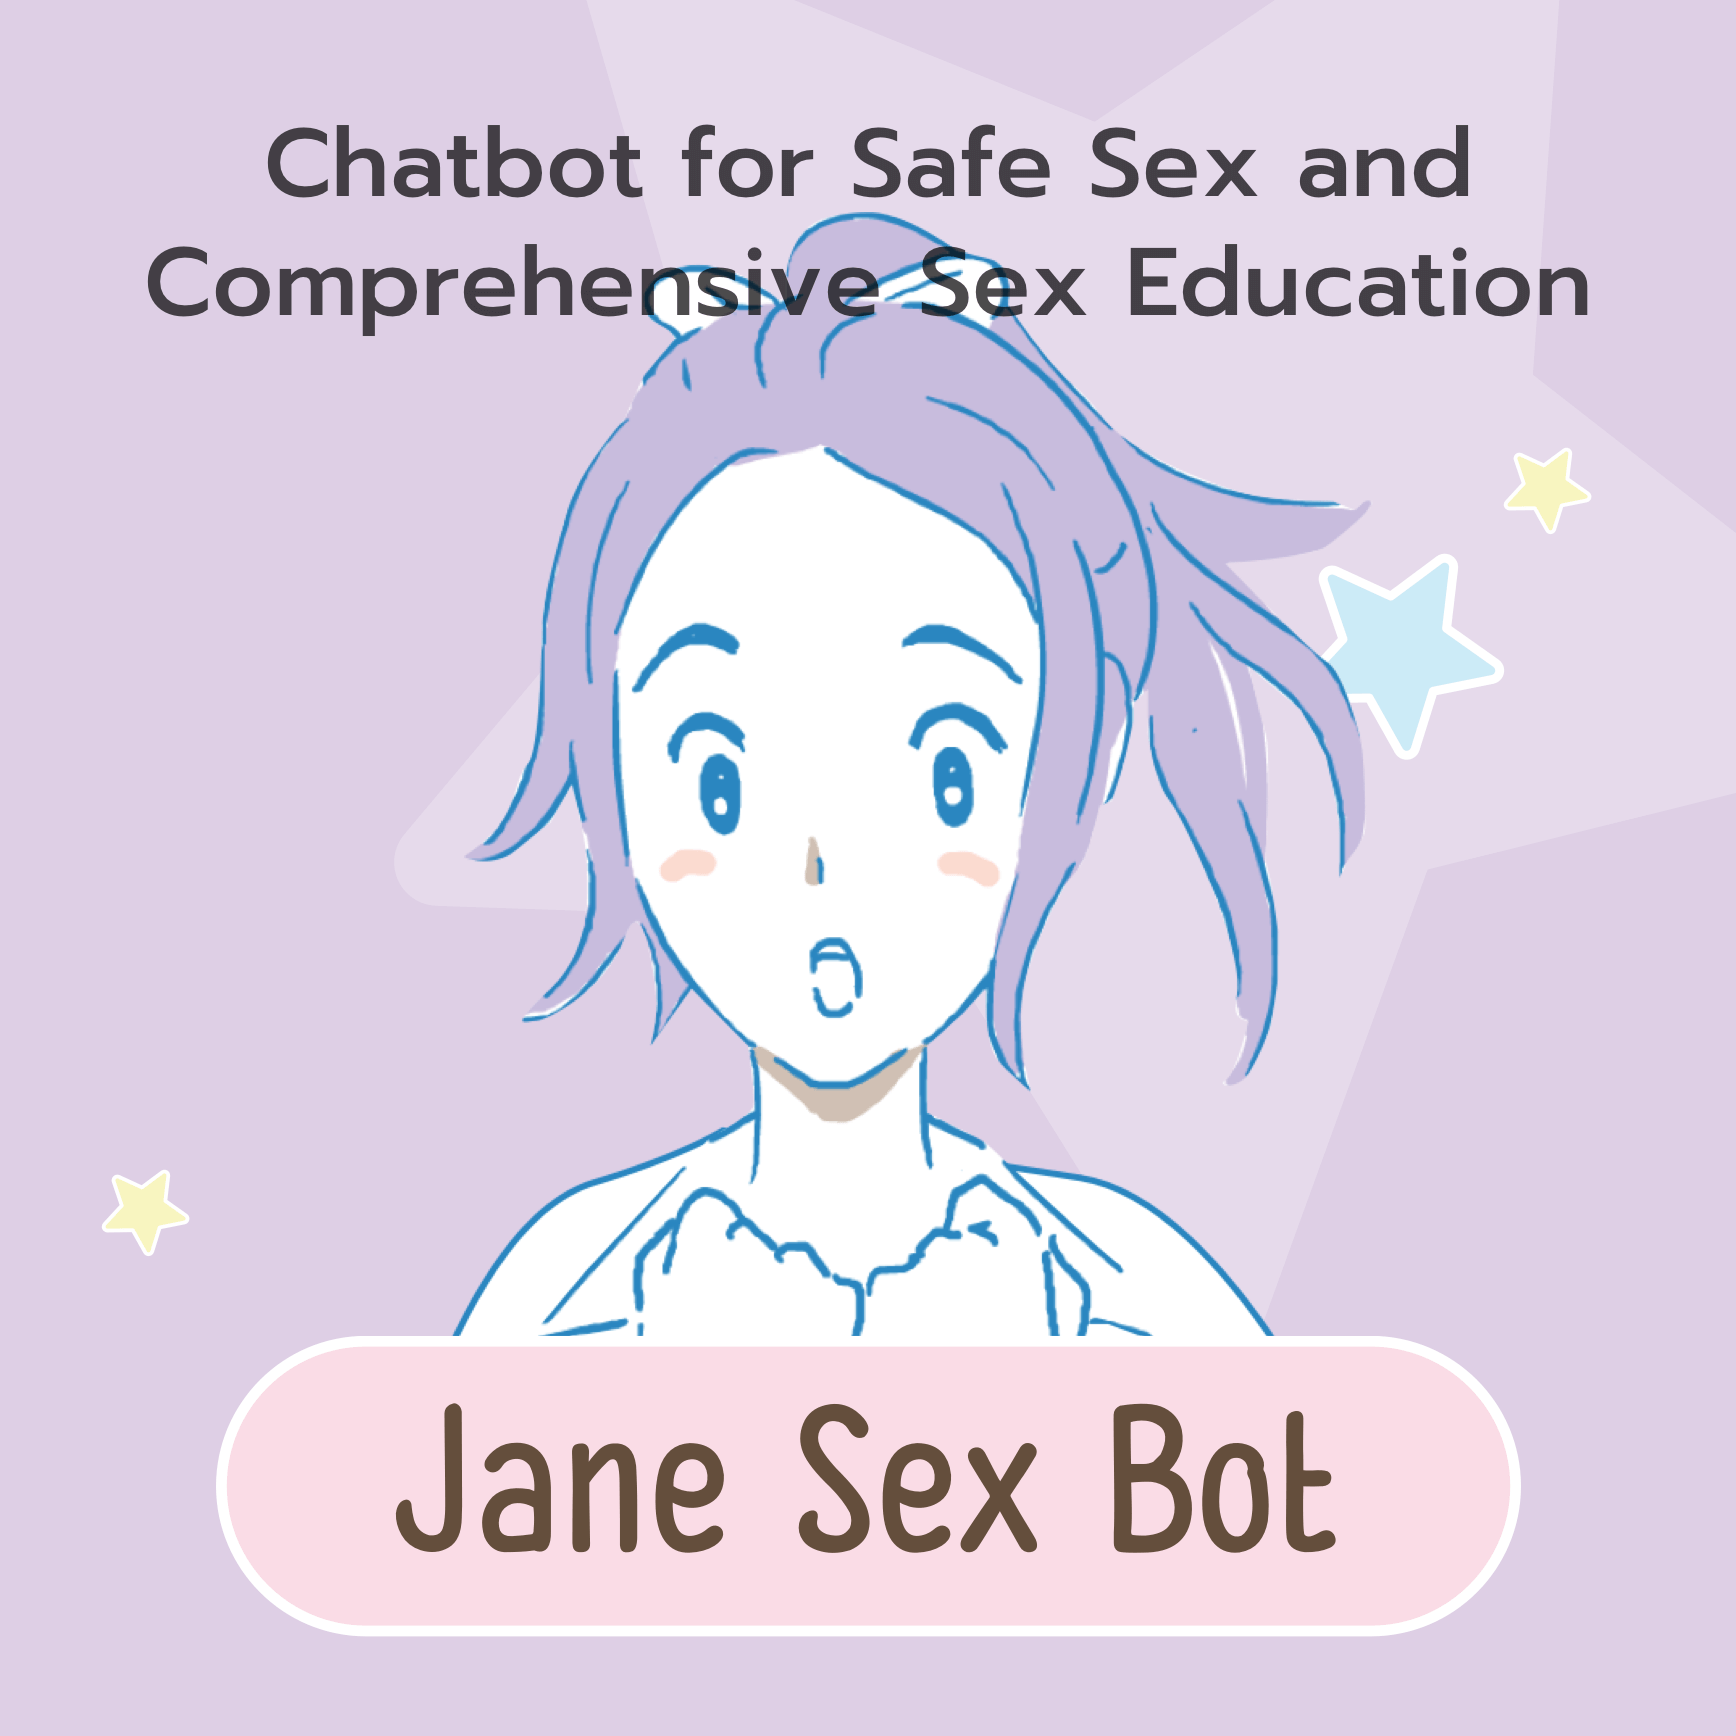 Jane Sex Bot